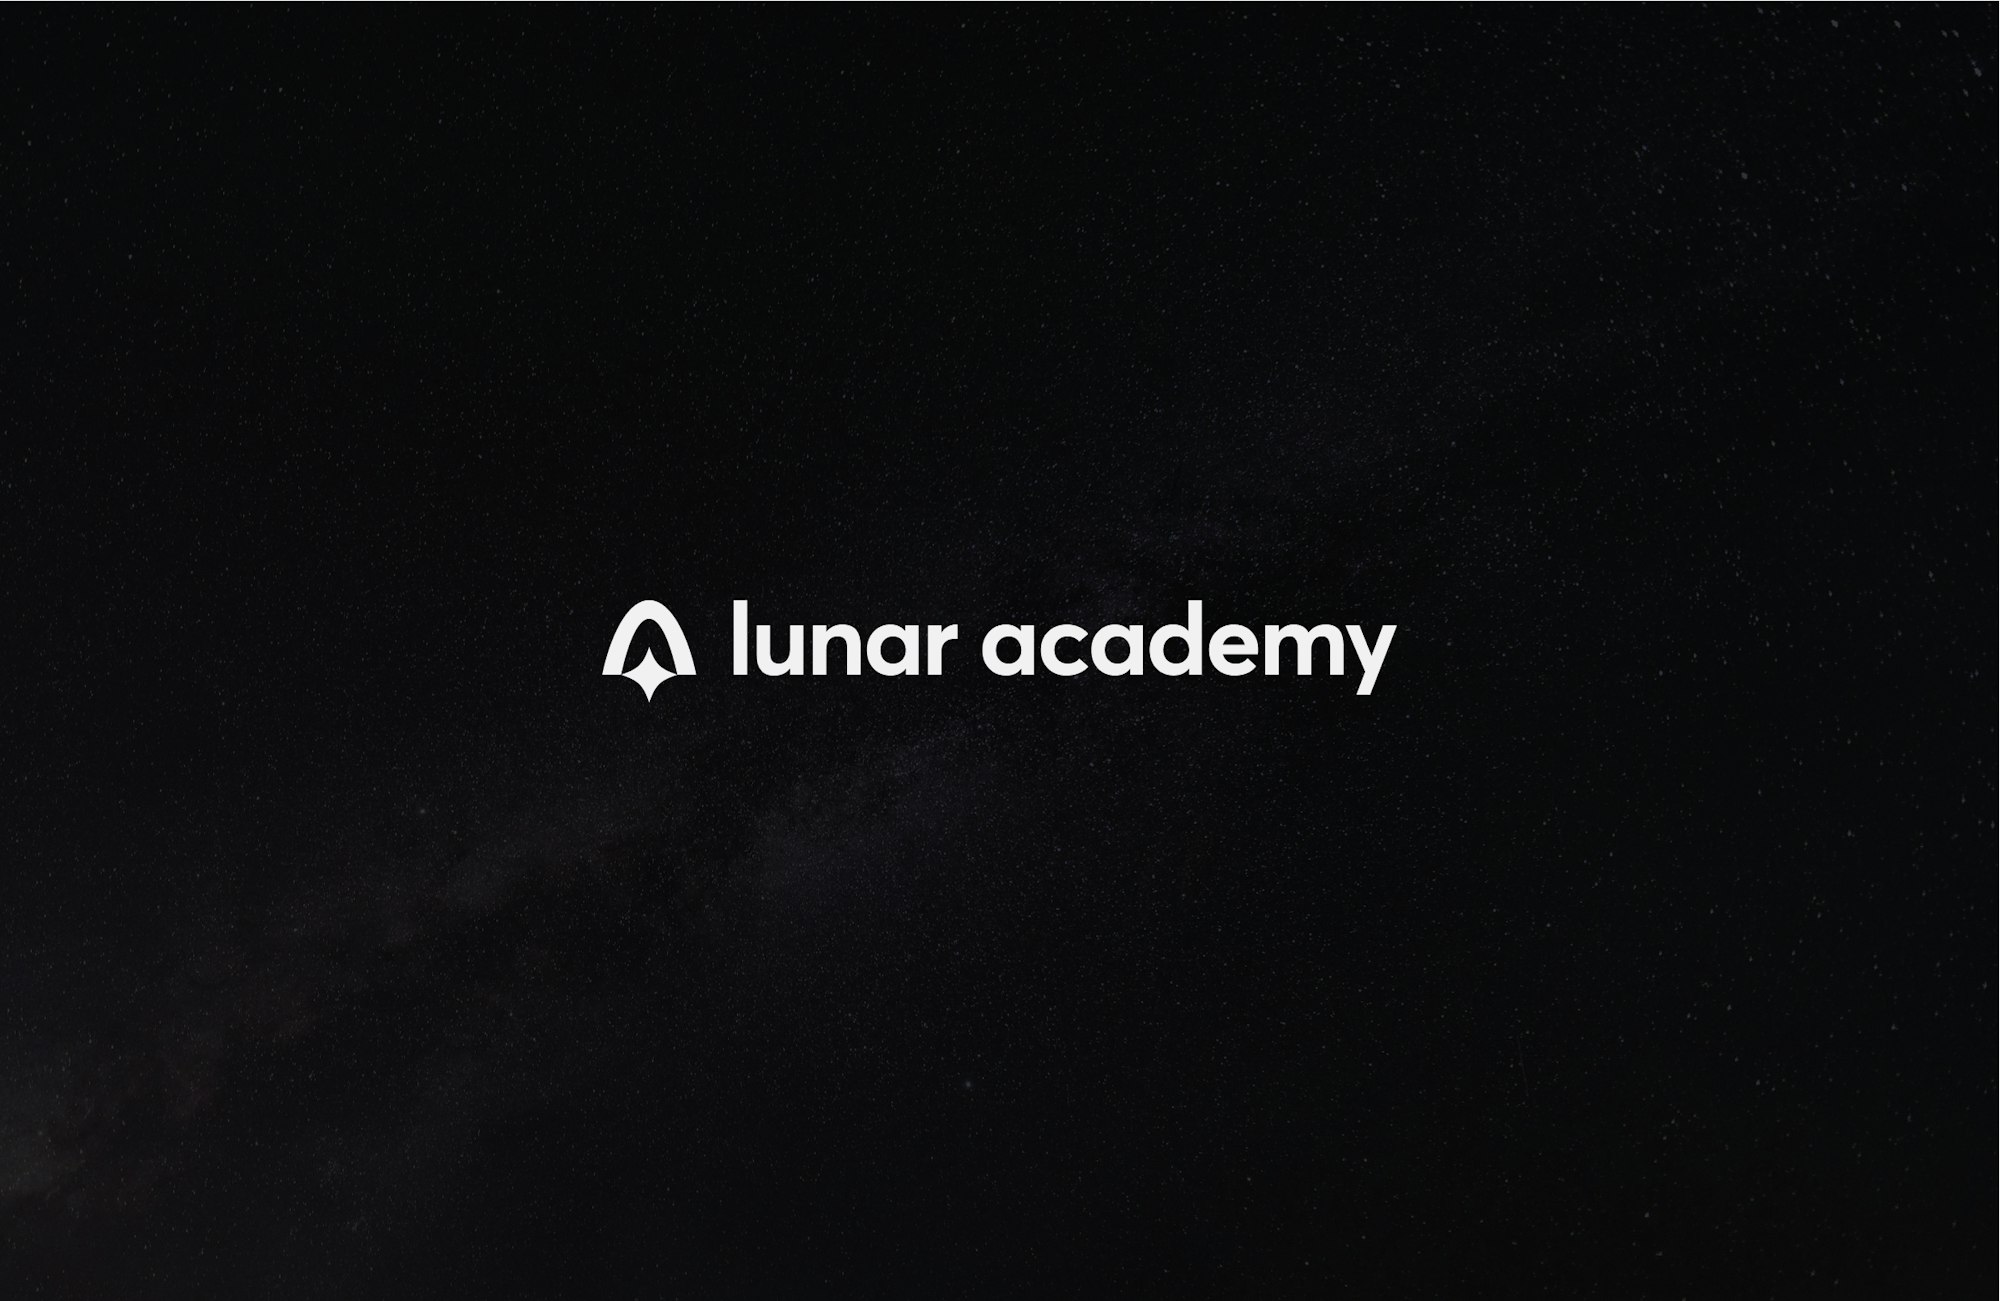 Lunar academy logo op een donkere achtergrond